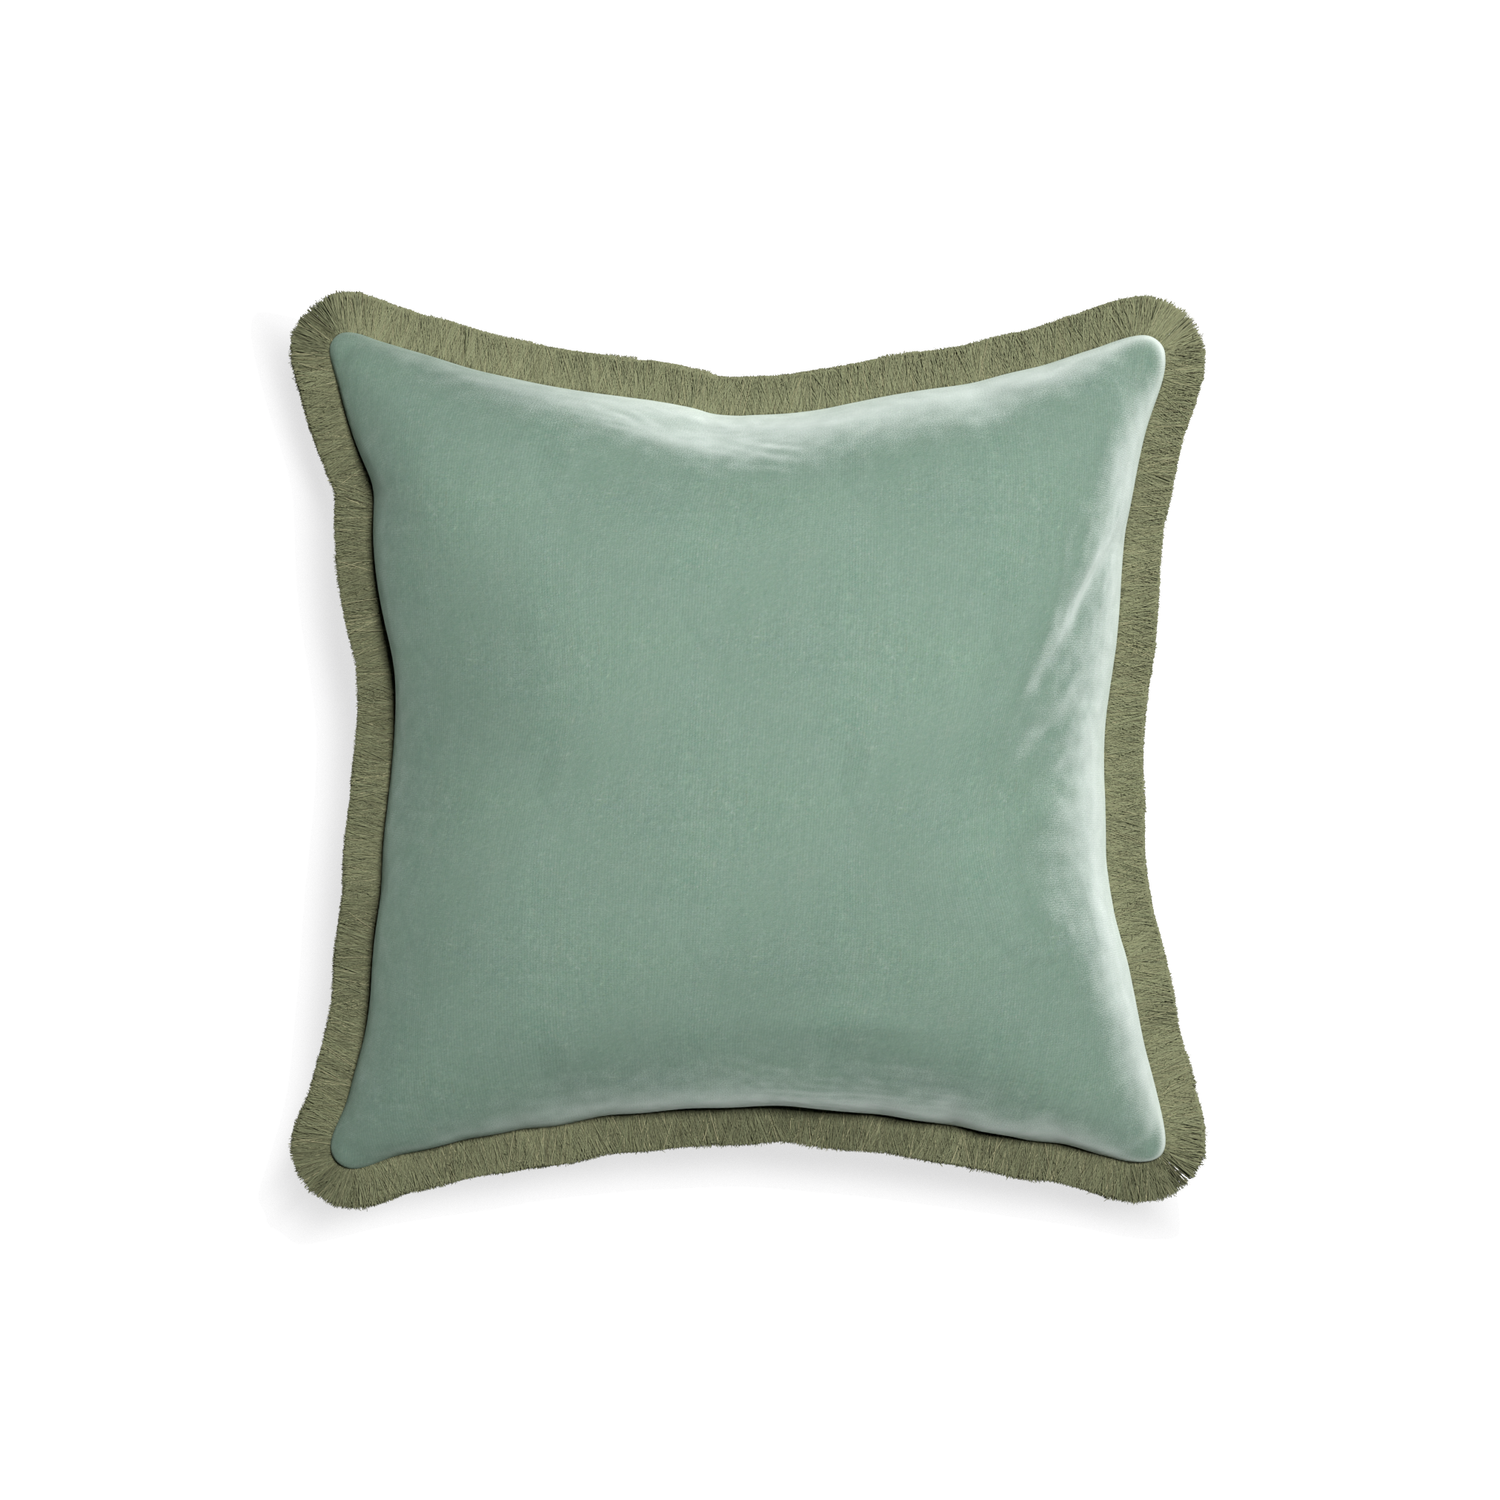 square blue green velvet pillow with sage green fringe